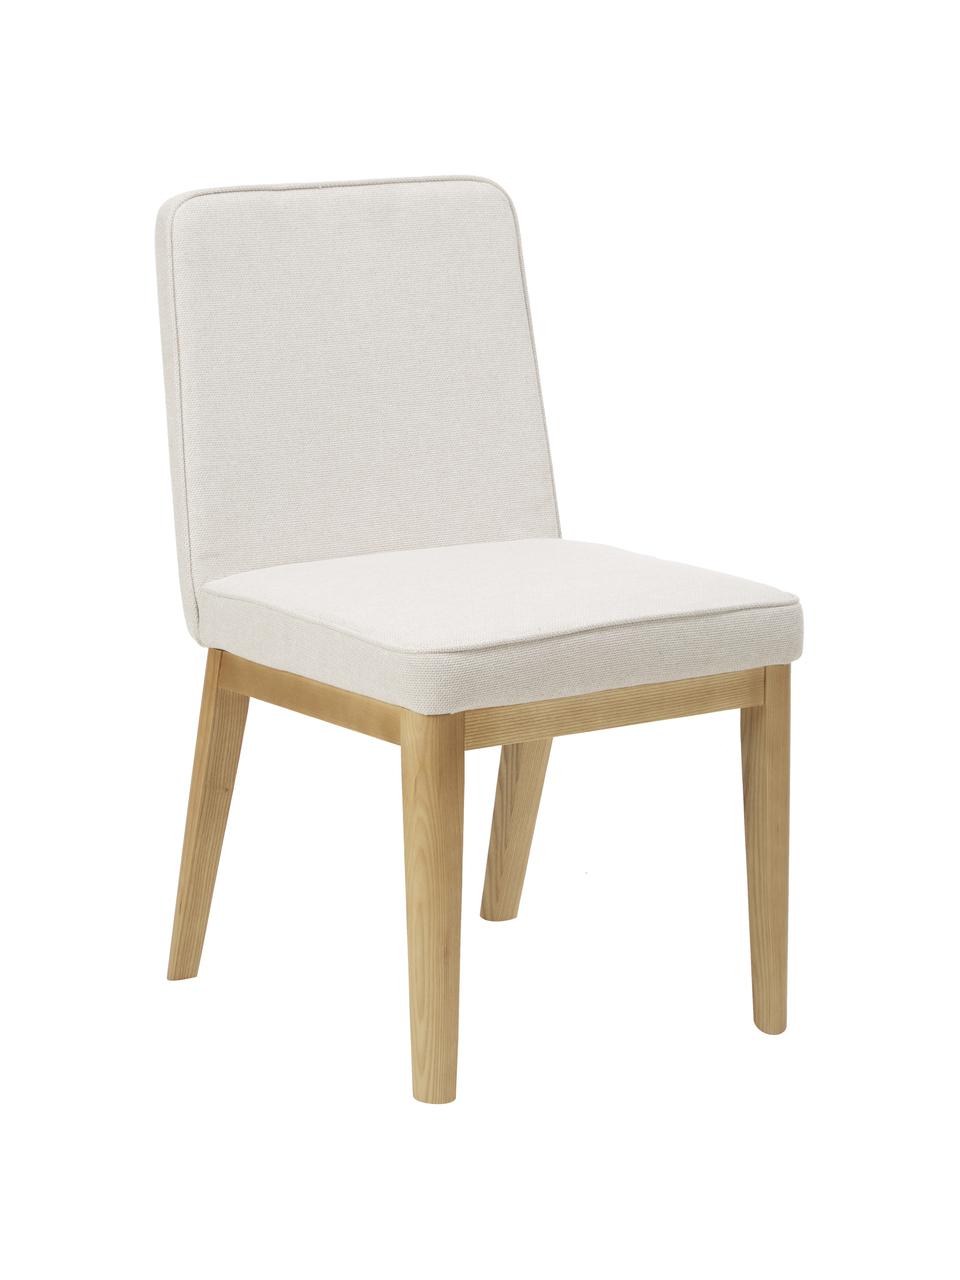 Chaise rembourrée couleur crème Koga, Tissu blanc crème, larg. 47 x haut. 86 cm